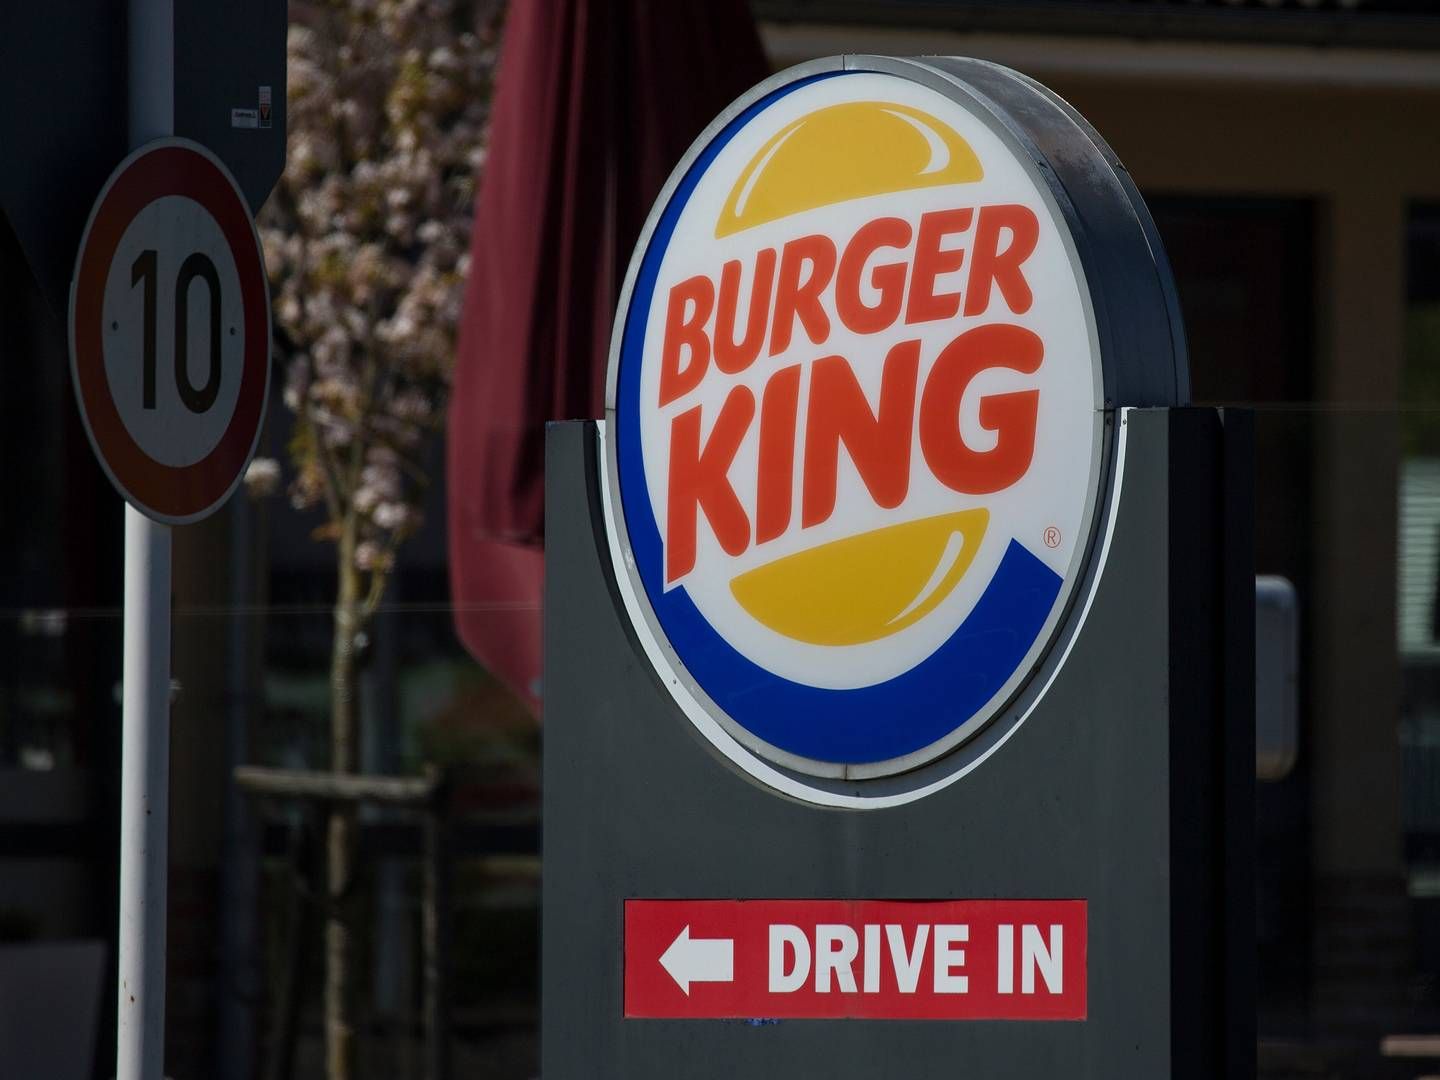 Norlys har et åbent ladenetværk, så standerne ved Burger King-restauranterne kan bruges af alle. | Foto: Fotostand/AP/Ritzau Scanpix